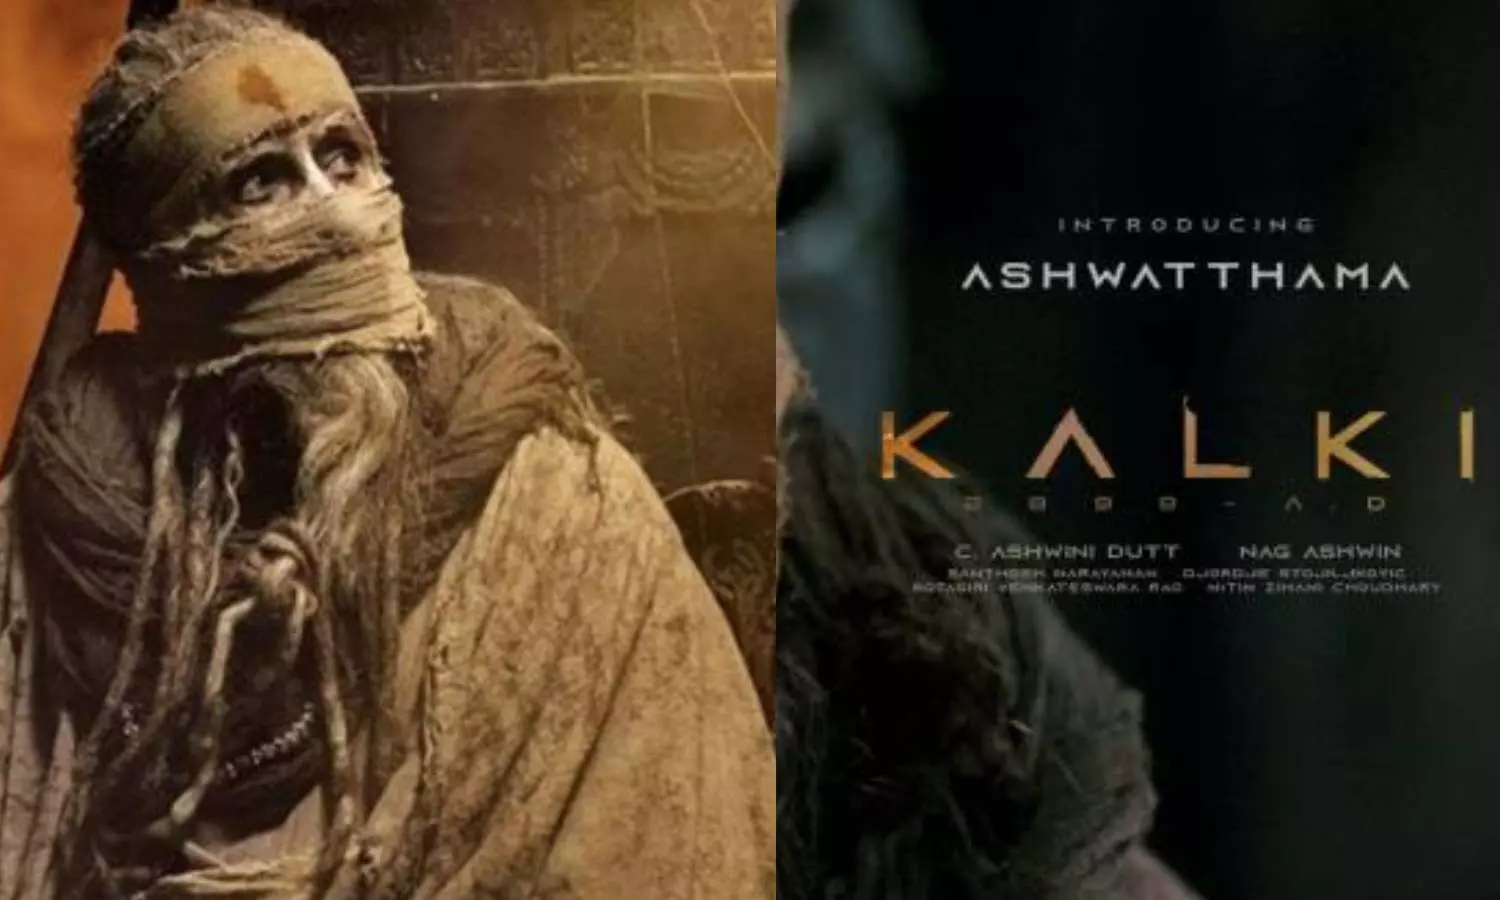 Meet Amitabh Bachchan as Ashwatthama in ‘Kalki 2898 AD’, watch teaser